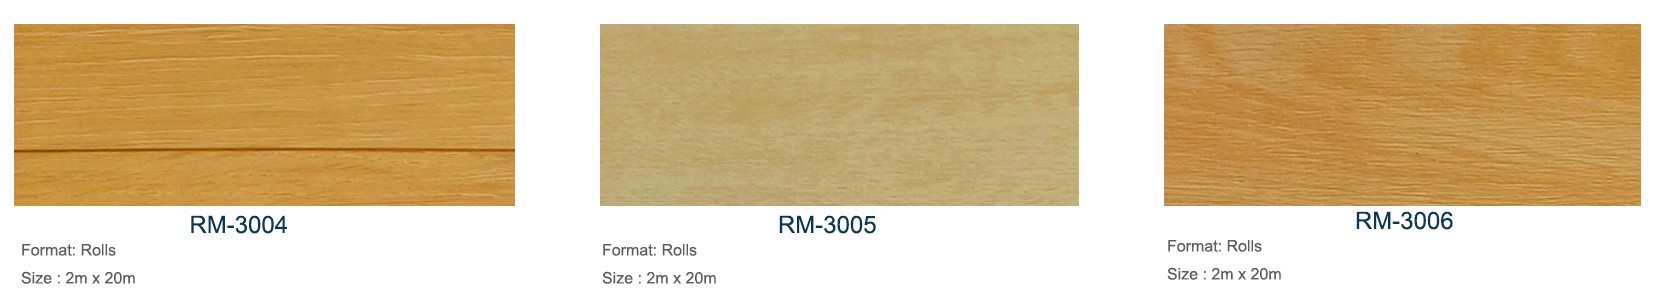 Relle wooden heterogneous floor